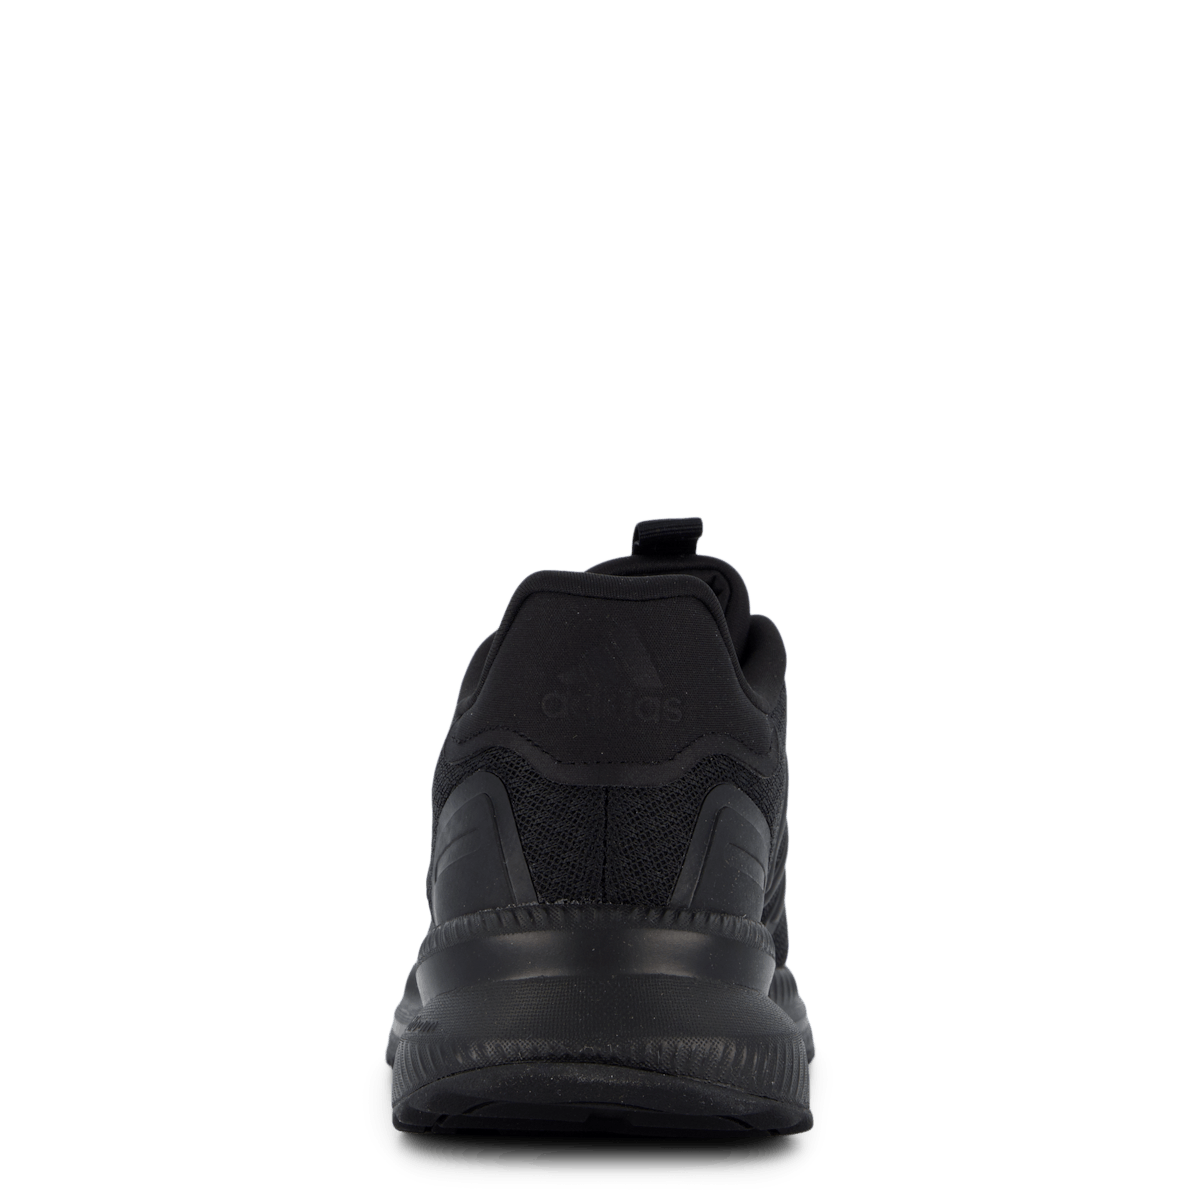 X_PLR Path Shoes Core Black / Core Black / Core Black